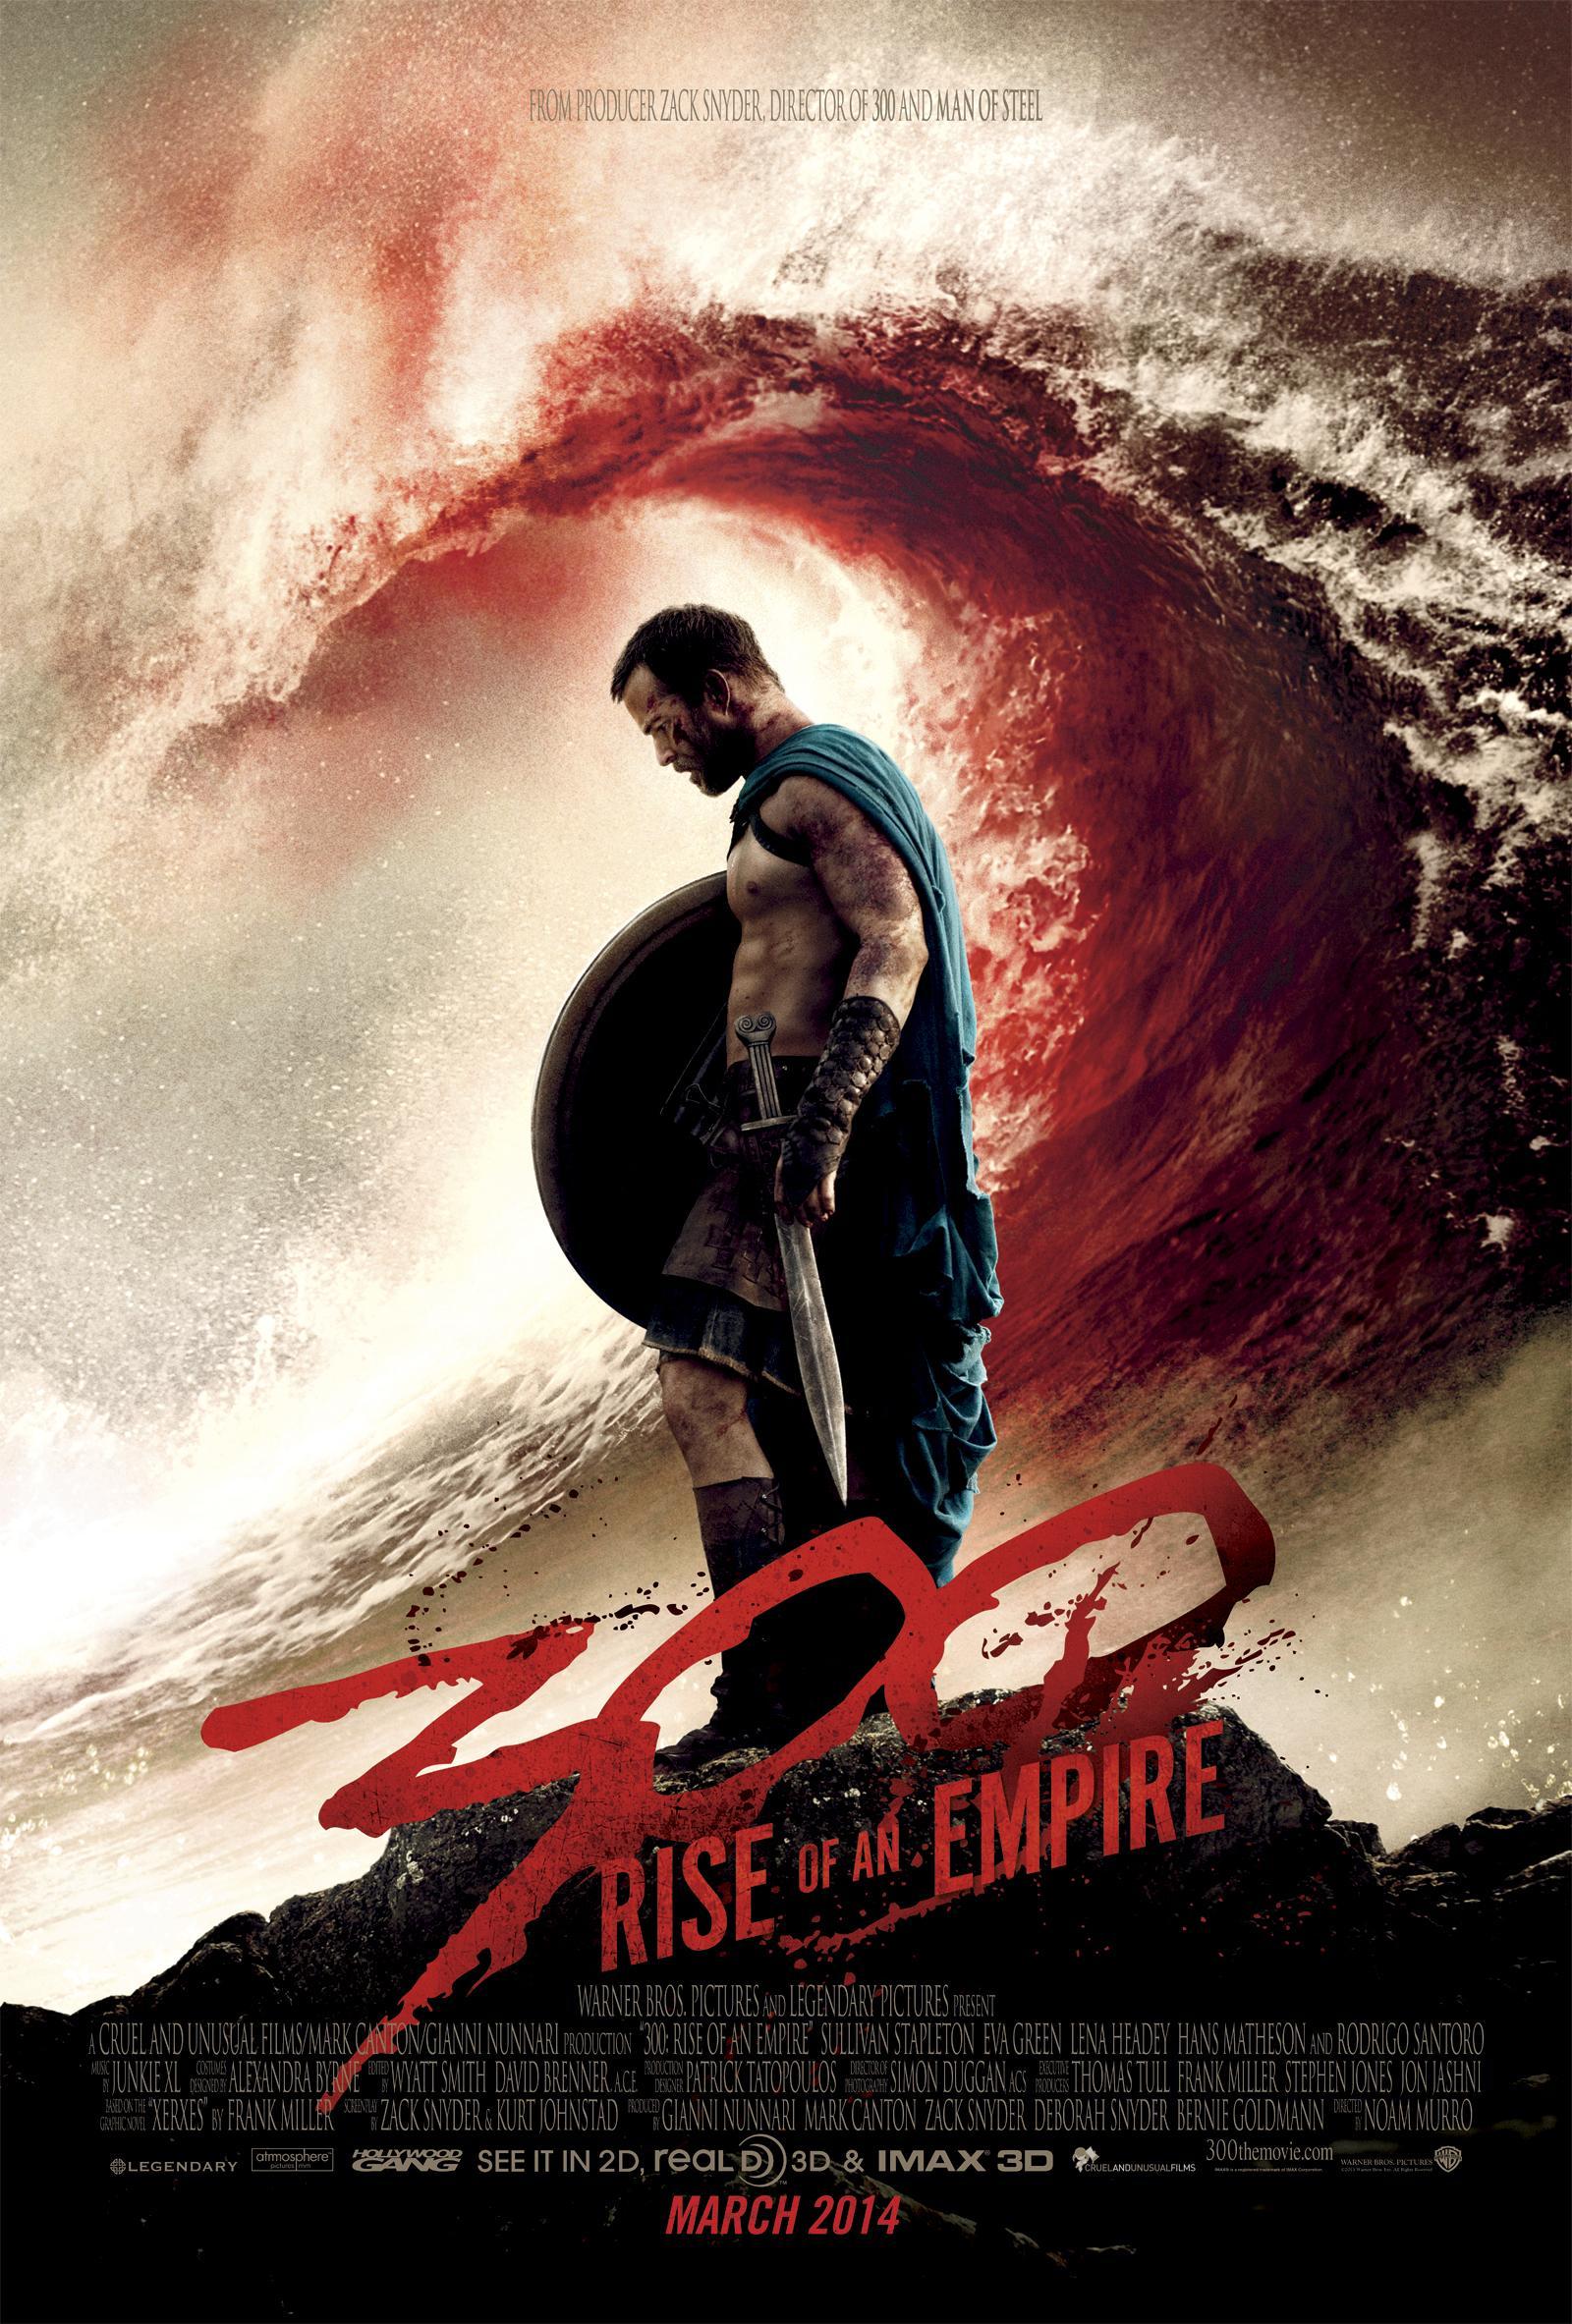 Постер фильма 300 спартанцев: Расцвет империи | 300: Rise of an Empire